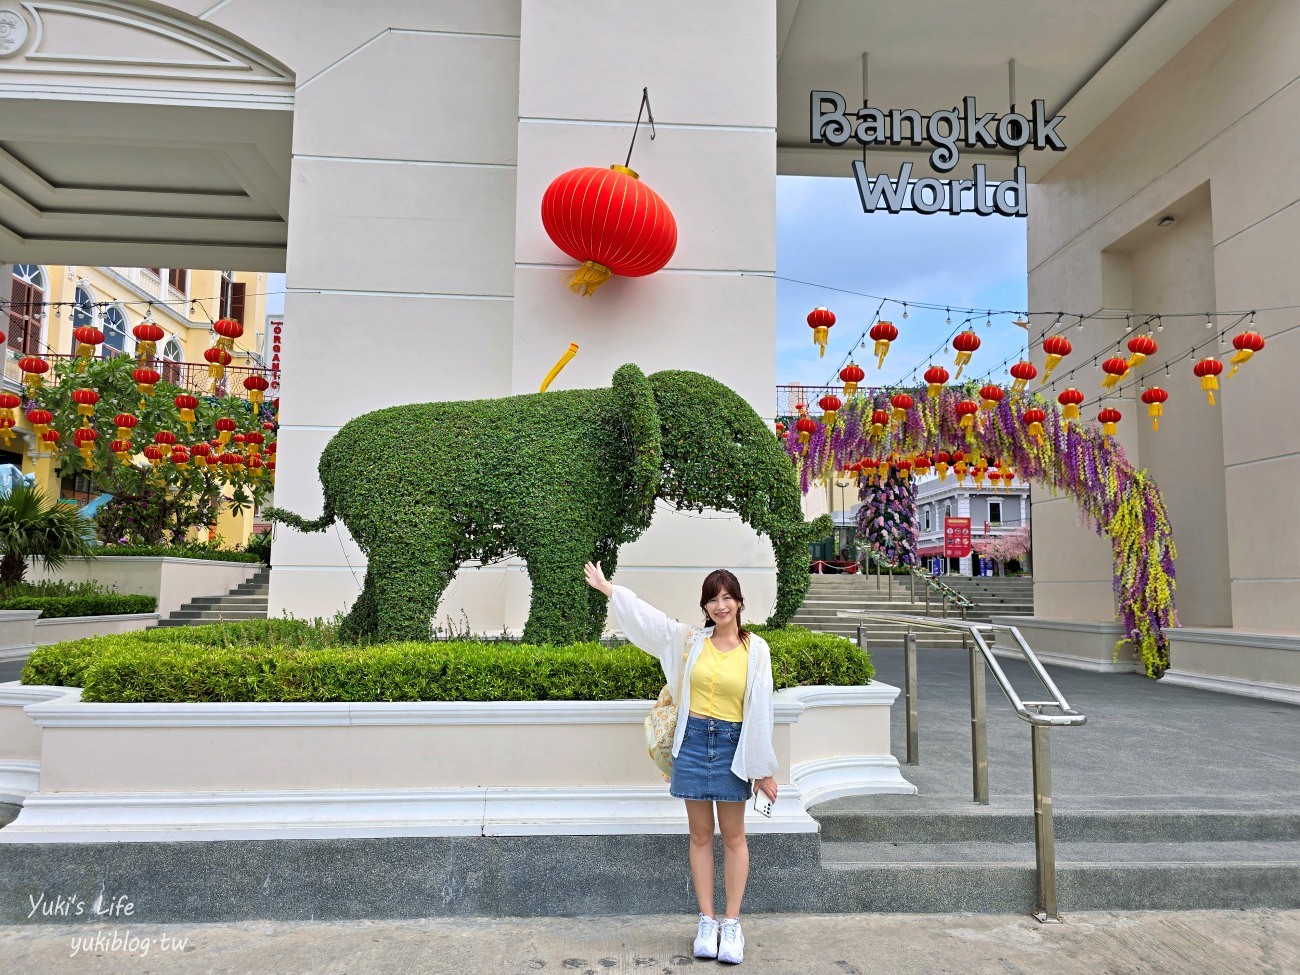 曼谷新景點【Bangkok World曼谷世界】曼谷地標一次打卡大滿足！ - yukiblog.tw